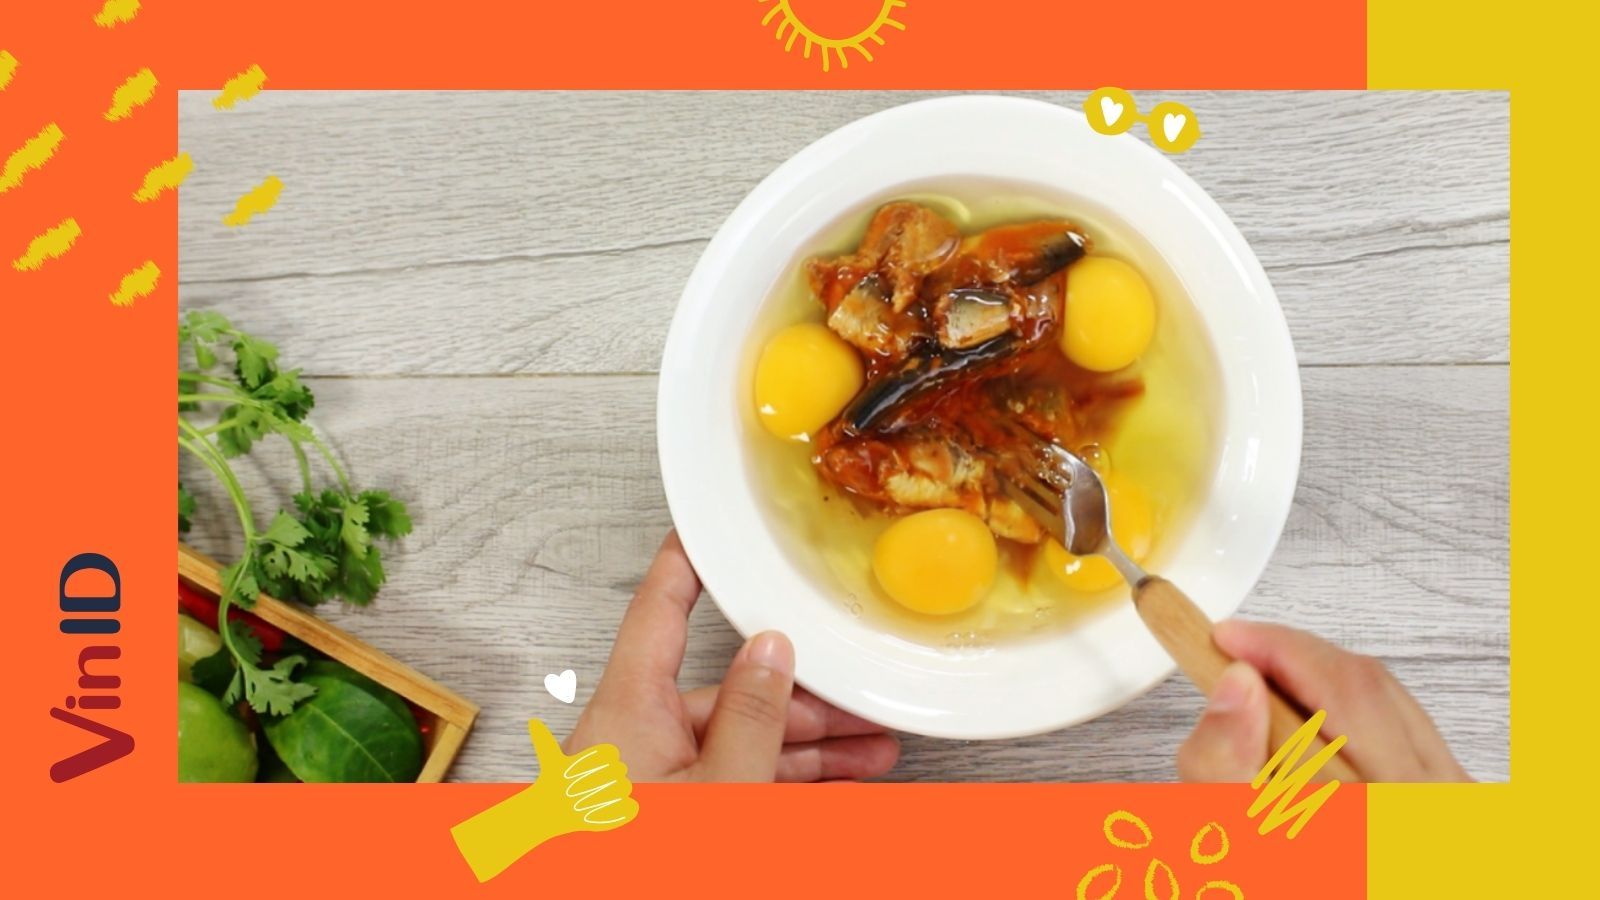 3 cách nấu cá hộp với trứng ngon tuyệt trong 5 phút